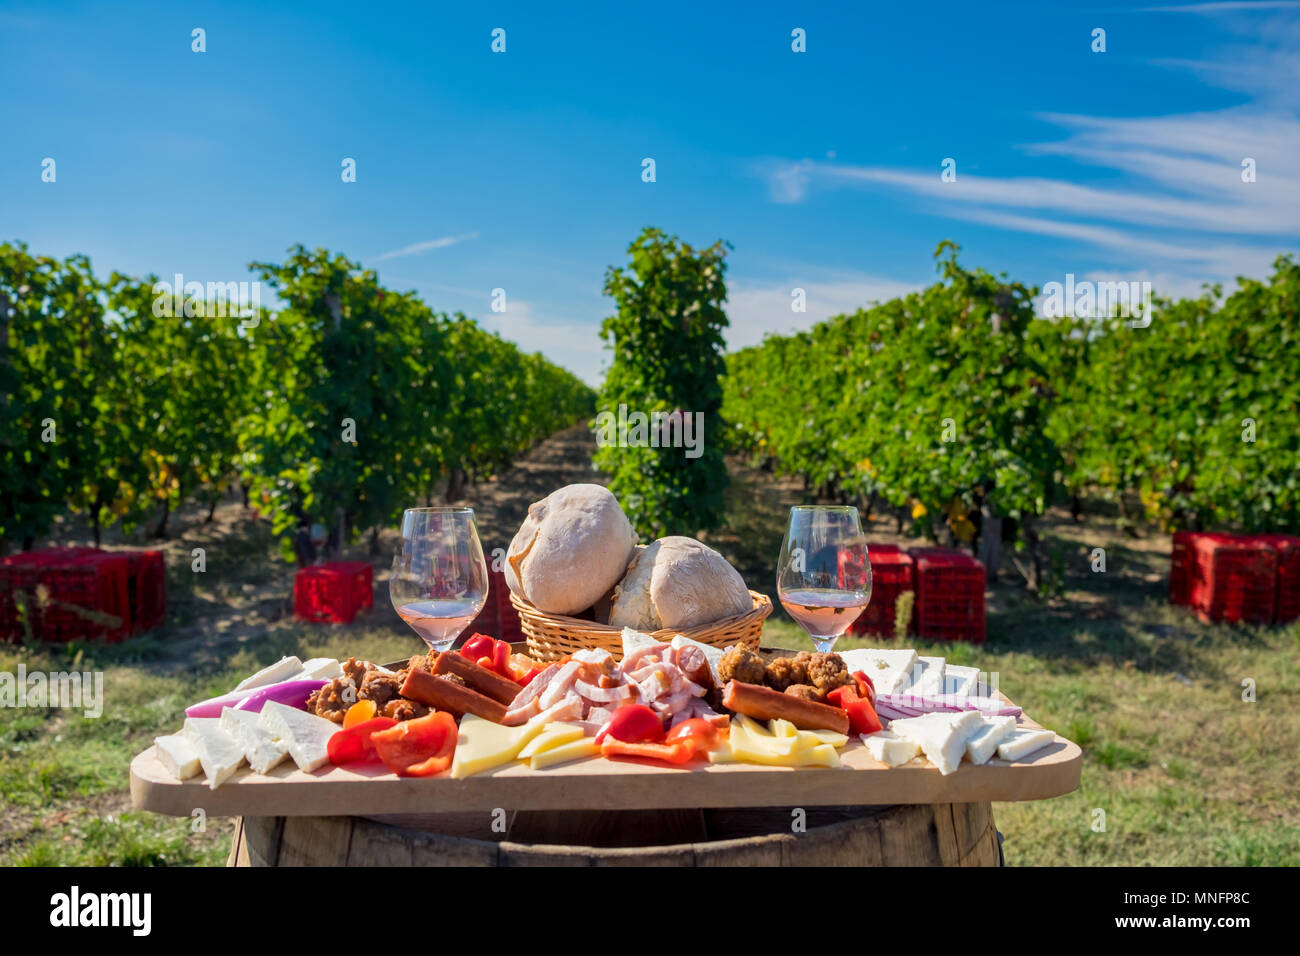 Traditionelles Essen Platte mit Wein und Weinberge im Hintergrund. Käse, Brot, Wurst, Zwiebeln und roter Wein im Glas Stockfoto